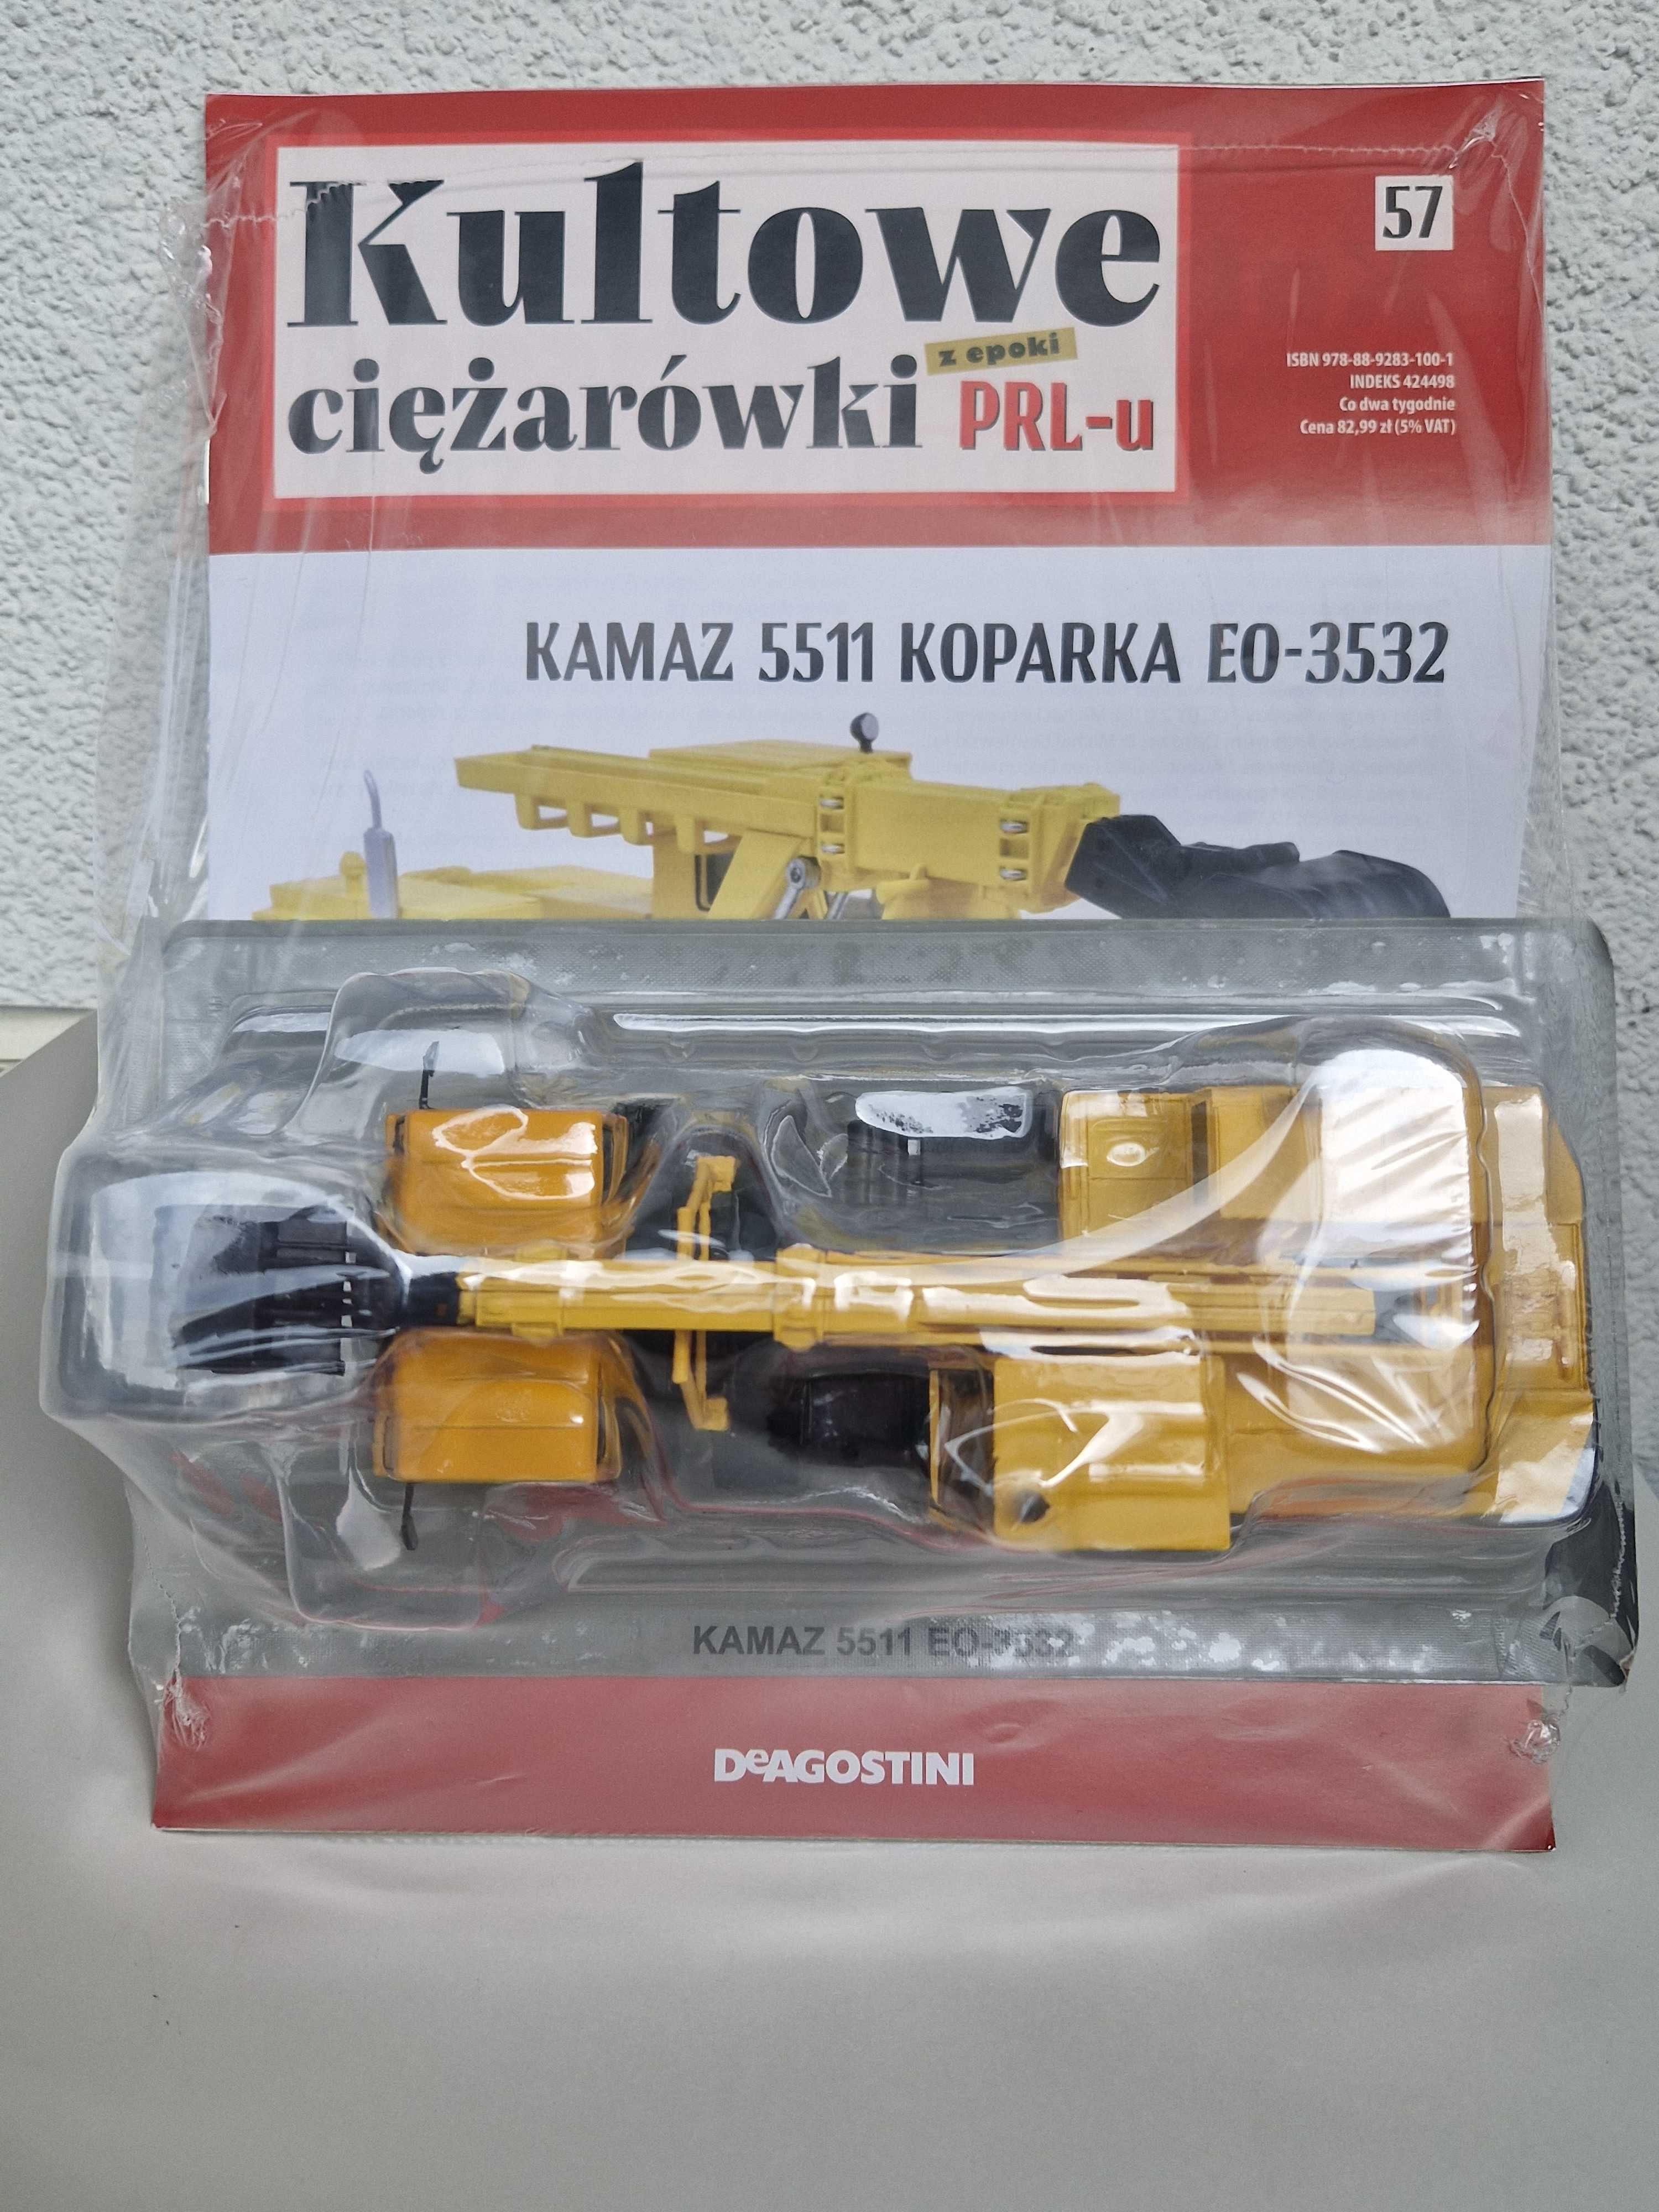 Model Kamaz 5511 Koparka Kultowe Ciężarówki PRL skala 1:43